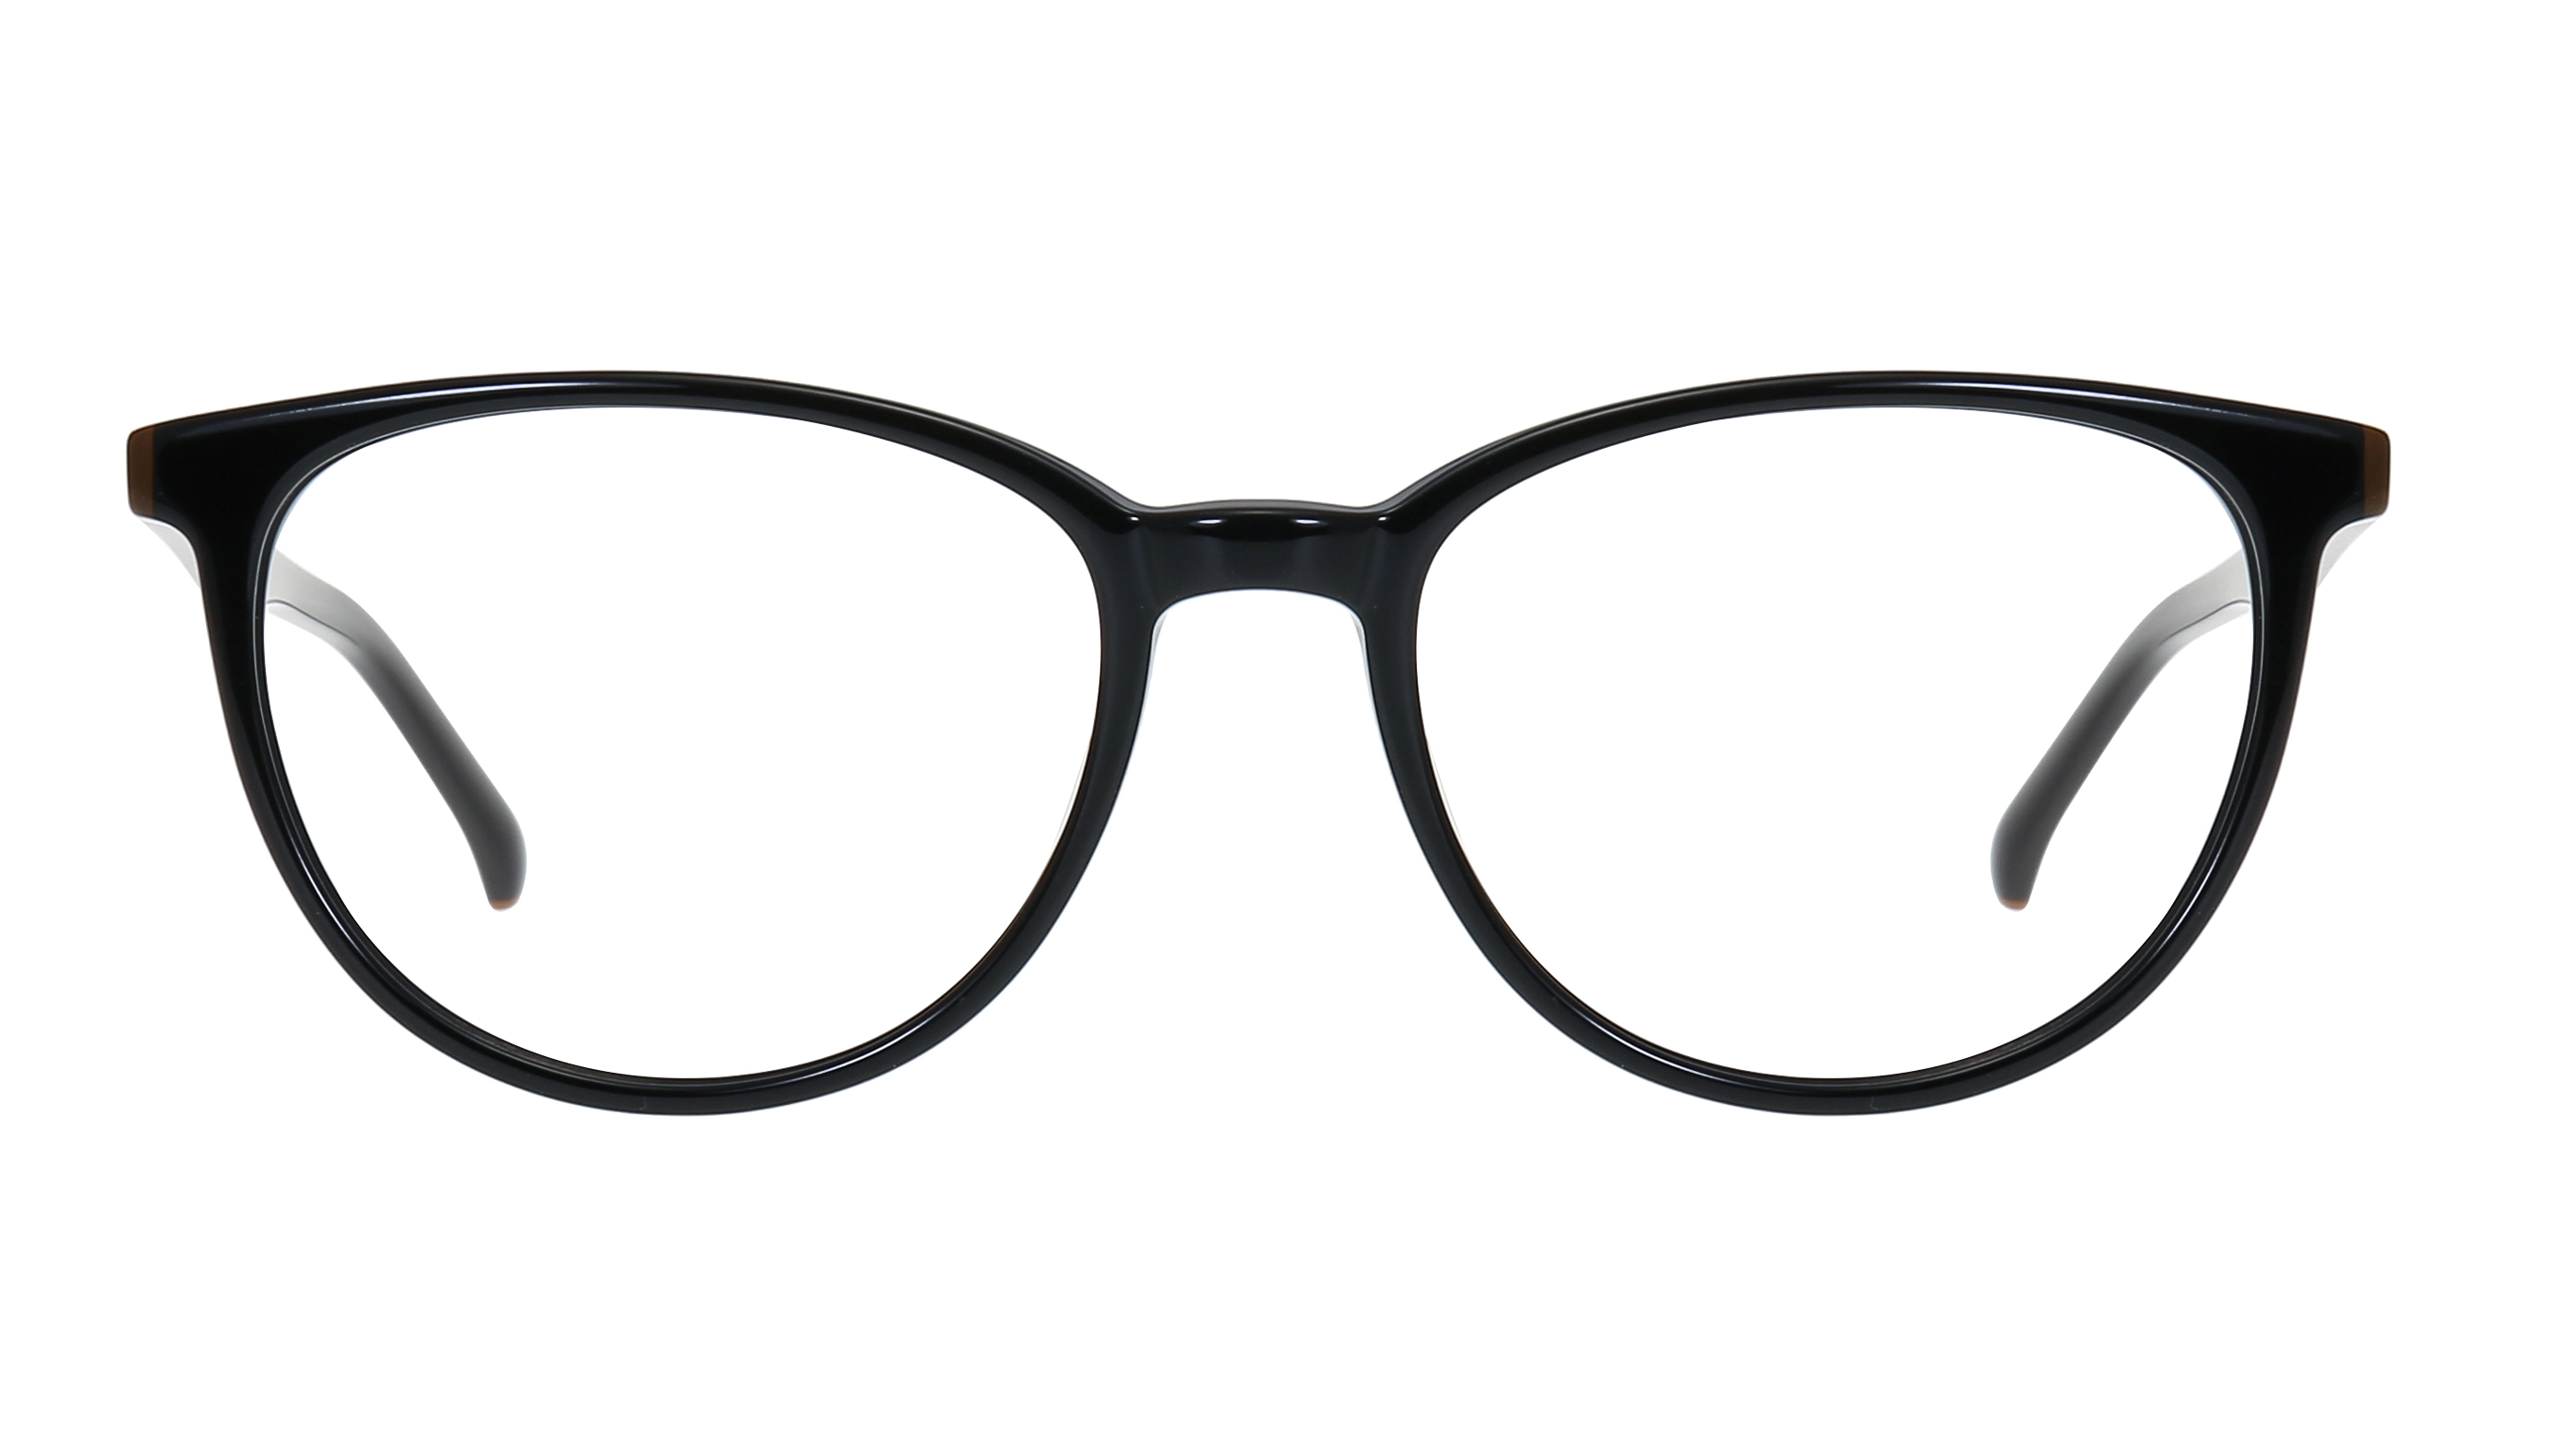 Vintage Style Acetate Glasses Frames LM6016